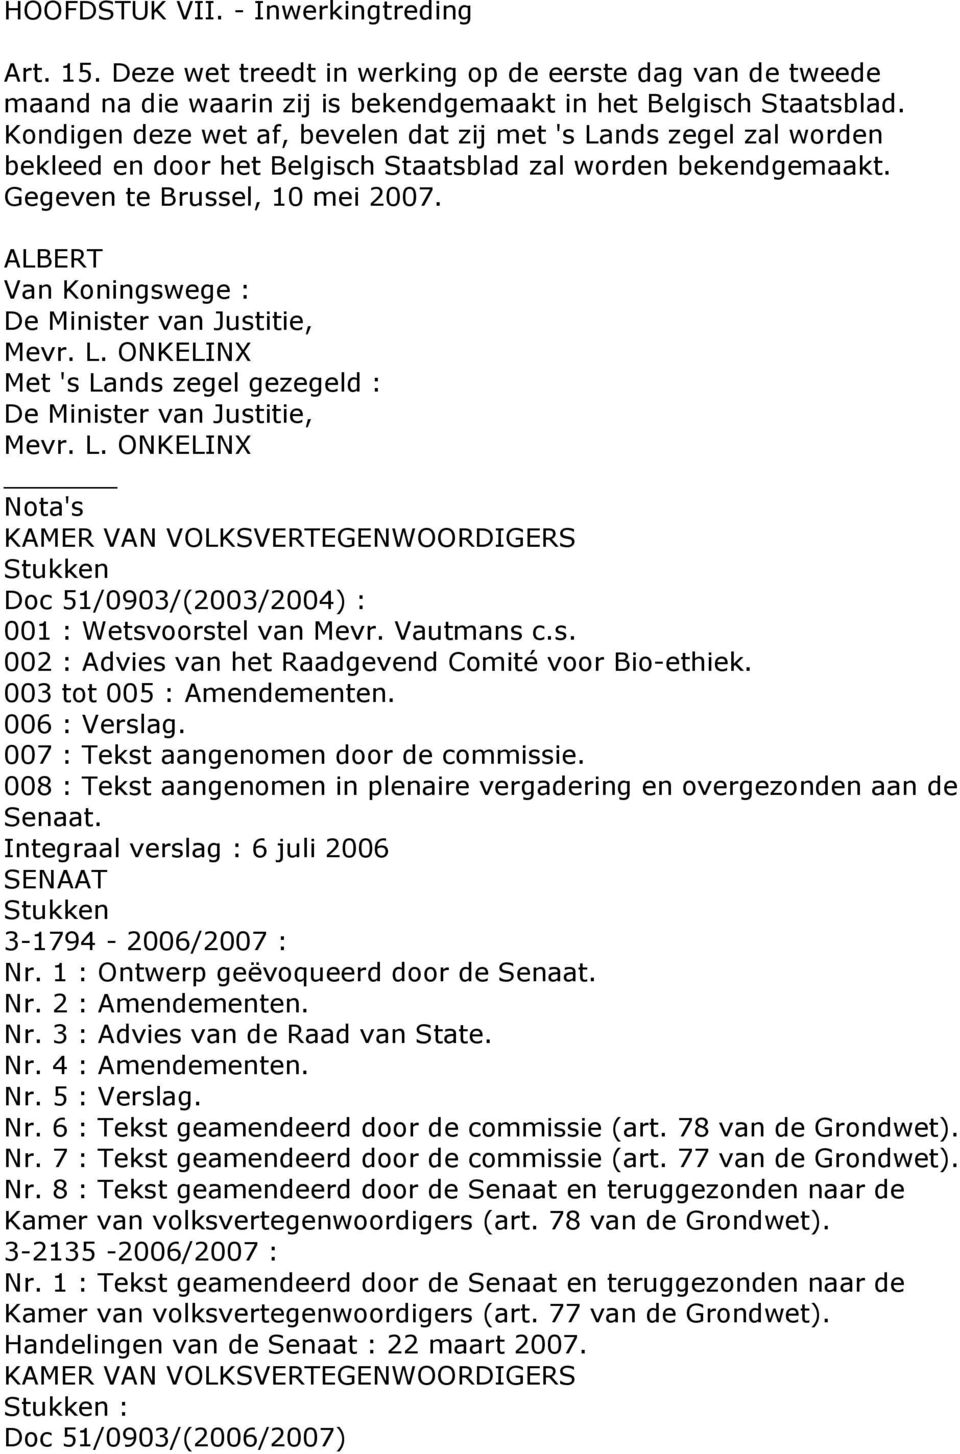 ALBERT Van Koningswege : De Minister van Justitie, Mevr. L. ONKELINX Met 's Lands zegel gezegeld : De Minister van Justitie, Mevr. L. ONKELINX Nota's KAMER VAN VOLKSVERTEGENWOORDIGERS Stukken Doc 51/0903/(2003/2004) : 001 : Wetsvoorstel van Mevr.